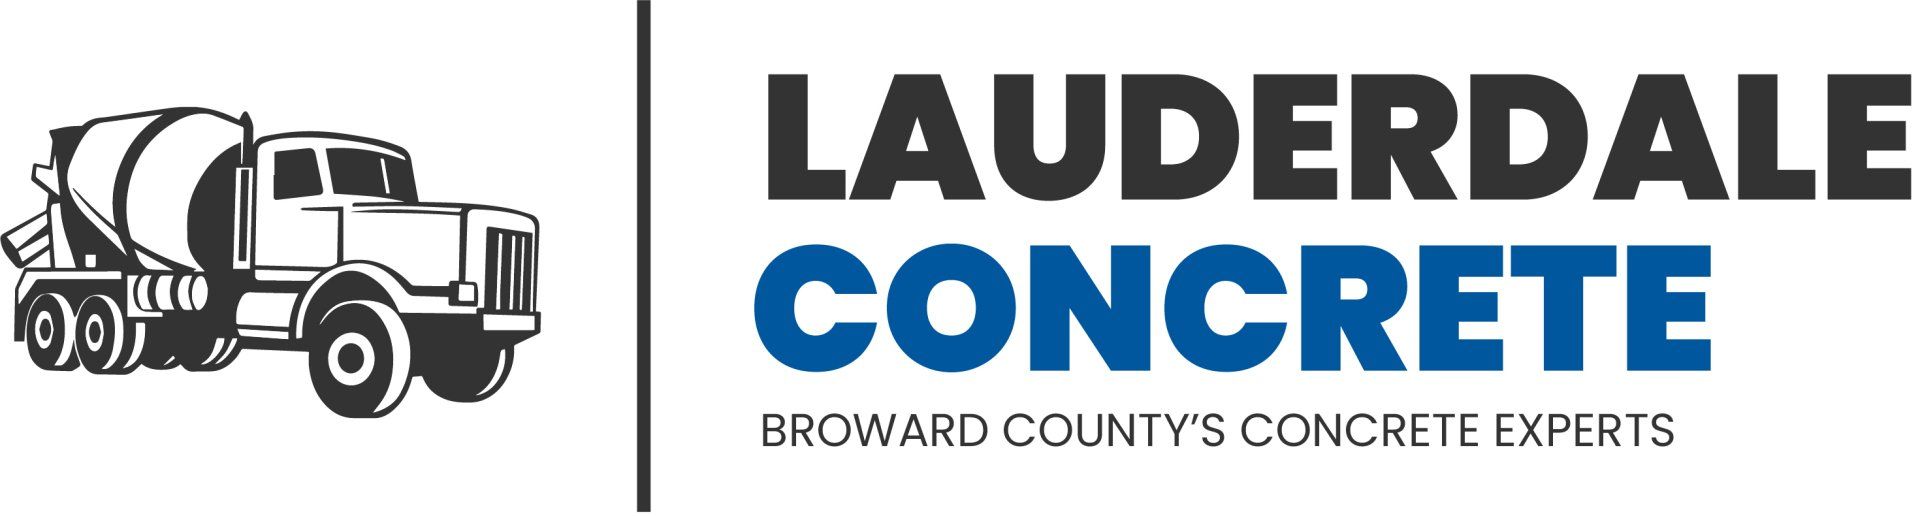 Fort Lauderdale Concrete Logo